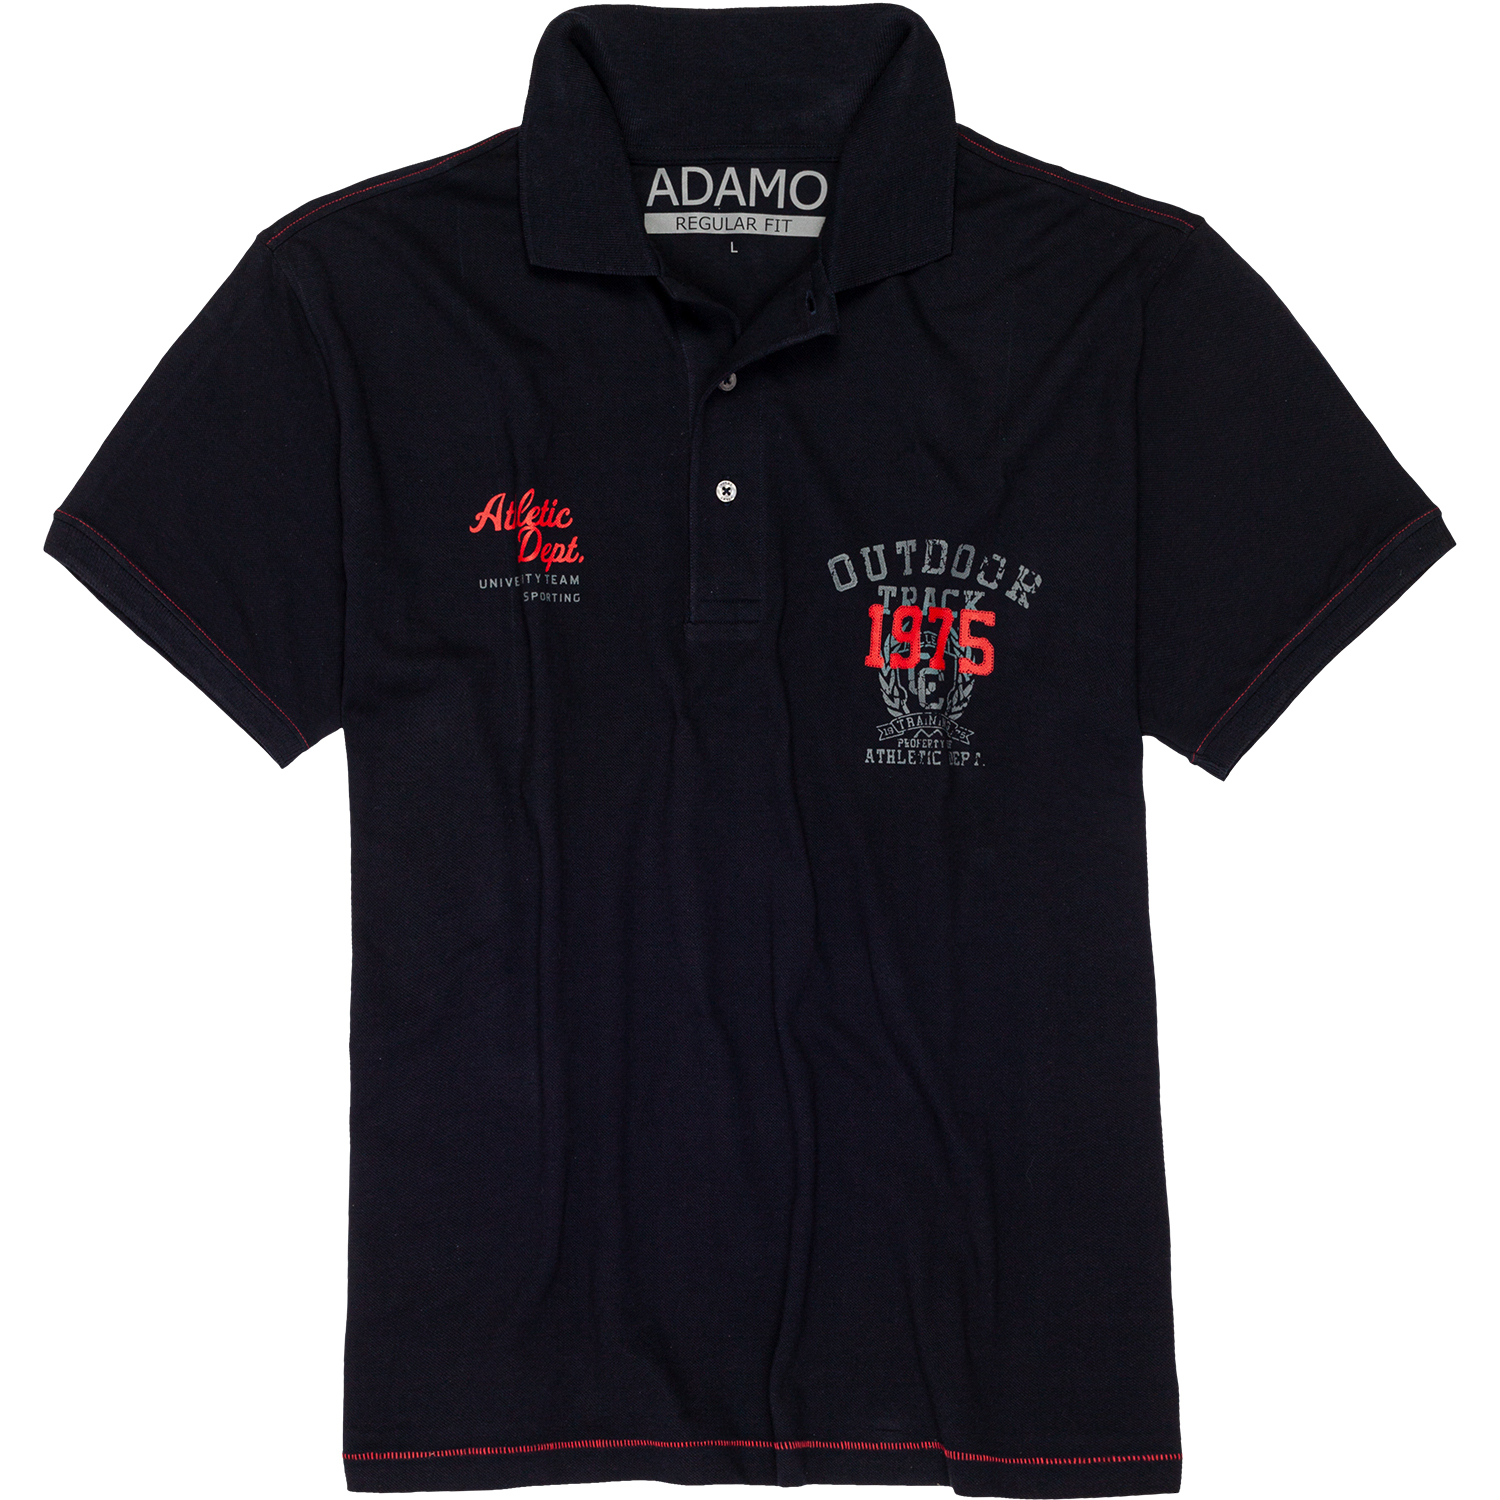 Herren Pique Kurzarm Polo Shirt Modell ATHLETIC von ADAMO navy in großen Größen 2XL bis 12XL bedruckt